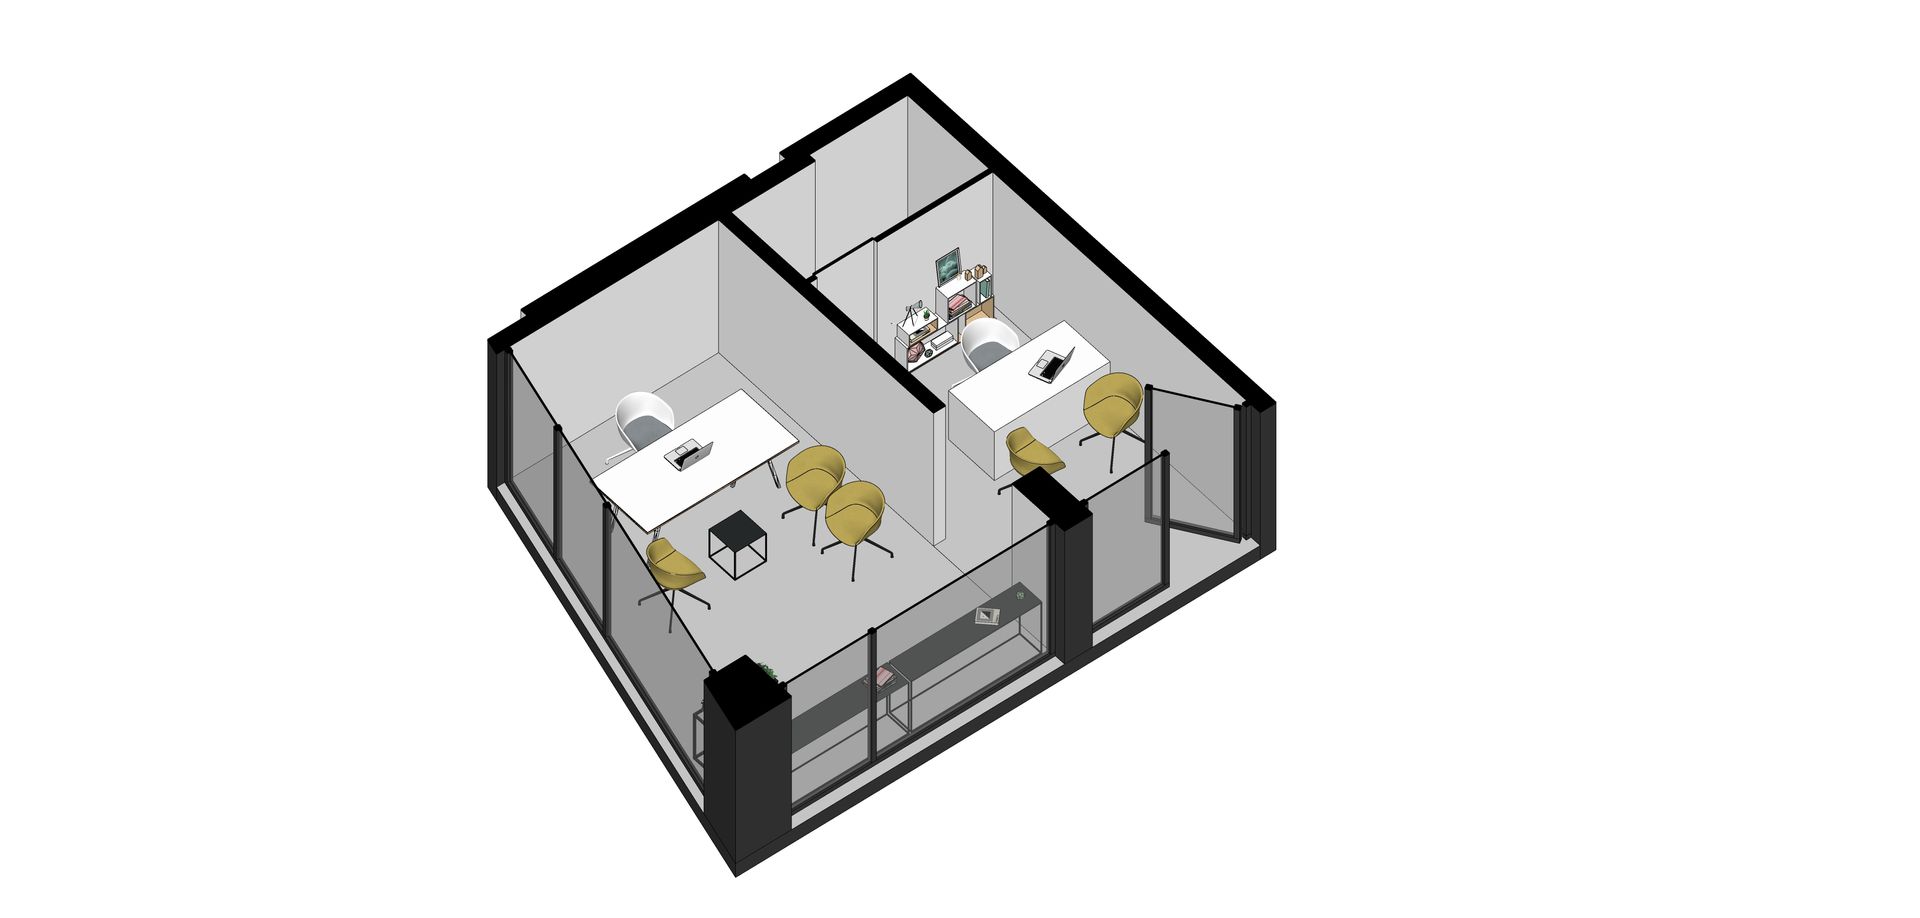 Ofis Yenileme Projesi, Orby İnşaat Mimarlık Orby İnşaat Mimarlık